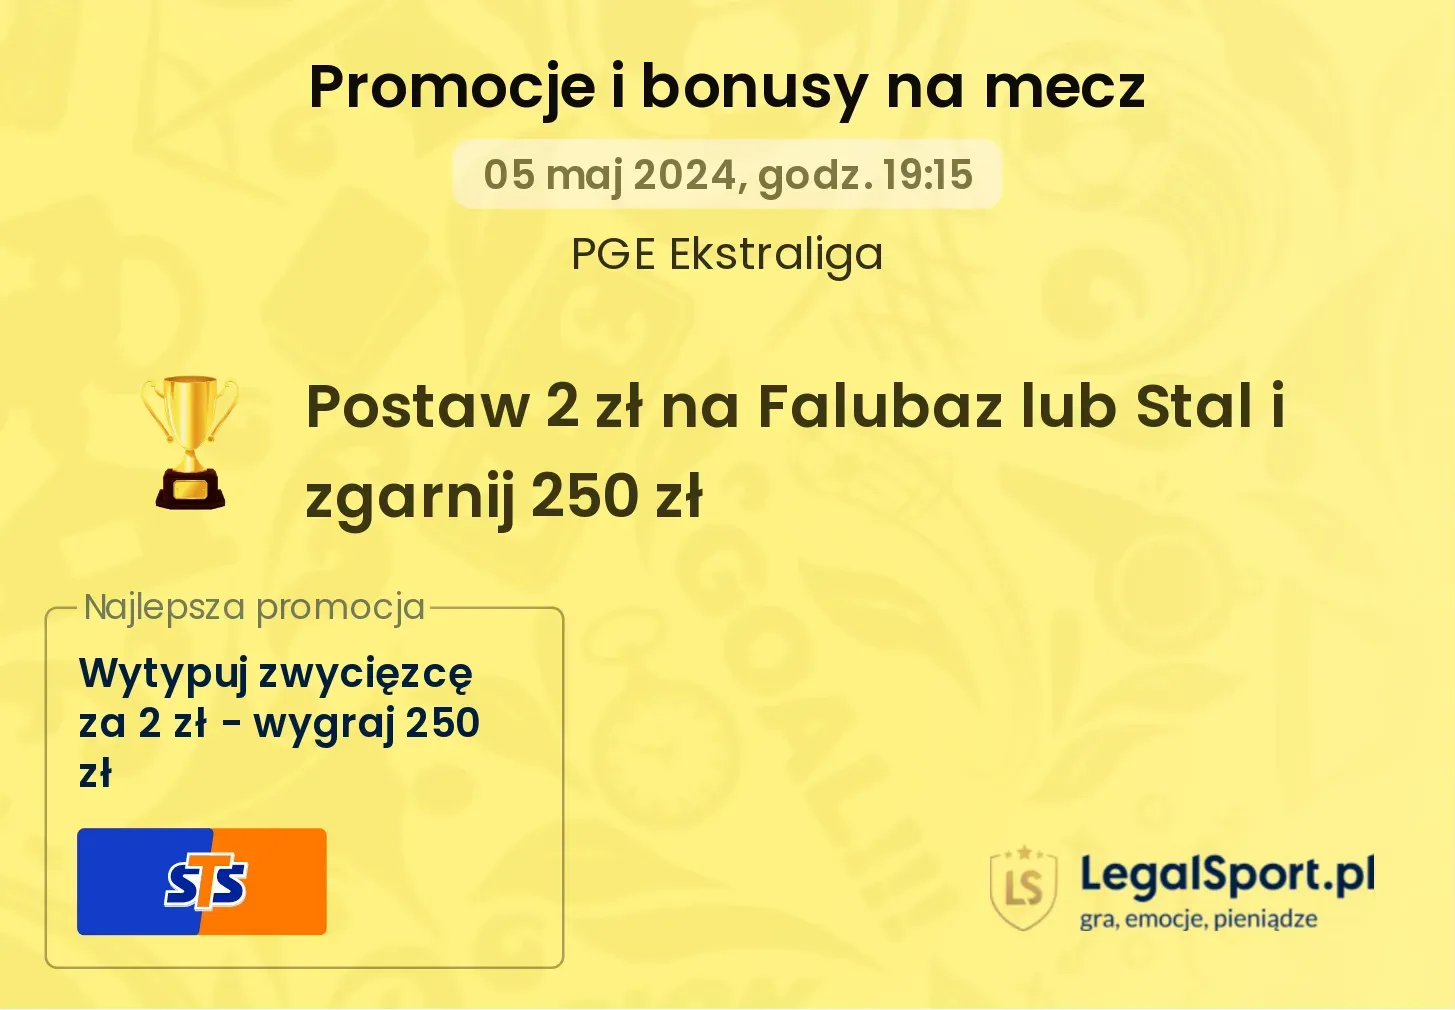 Postaw 2 zł na Falubaz lub Stal i zgarnij 250 zł promocje bonusy na mecz